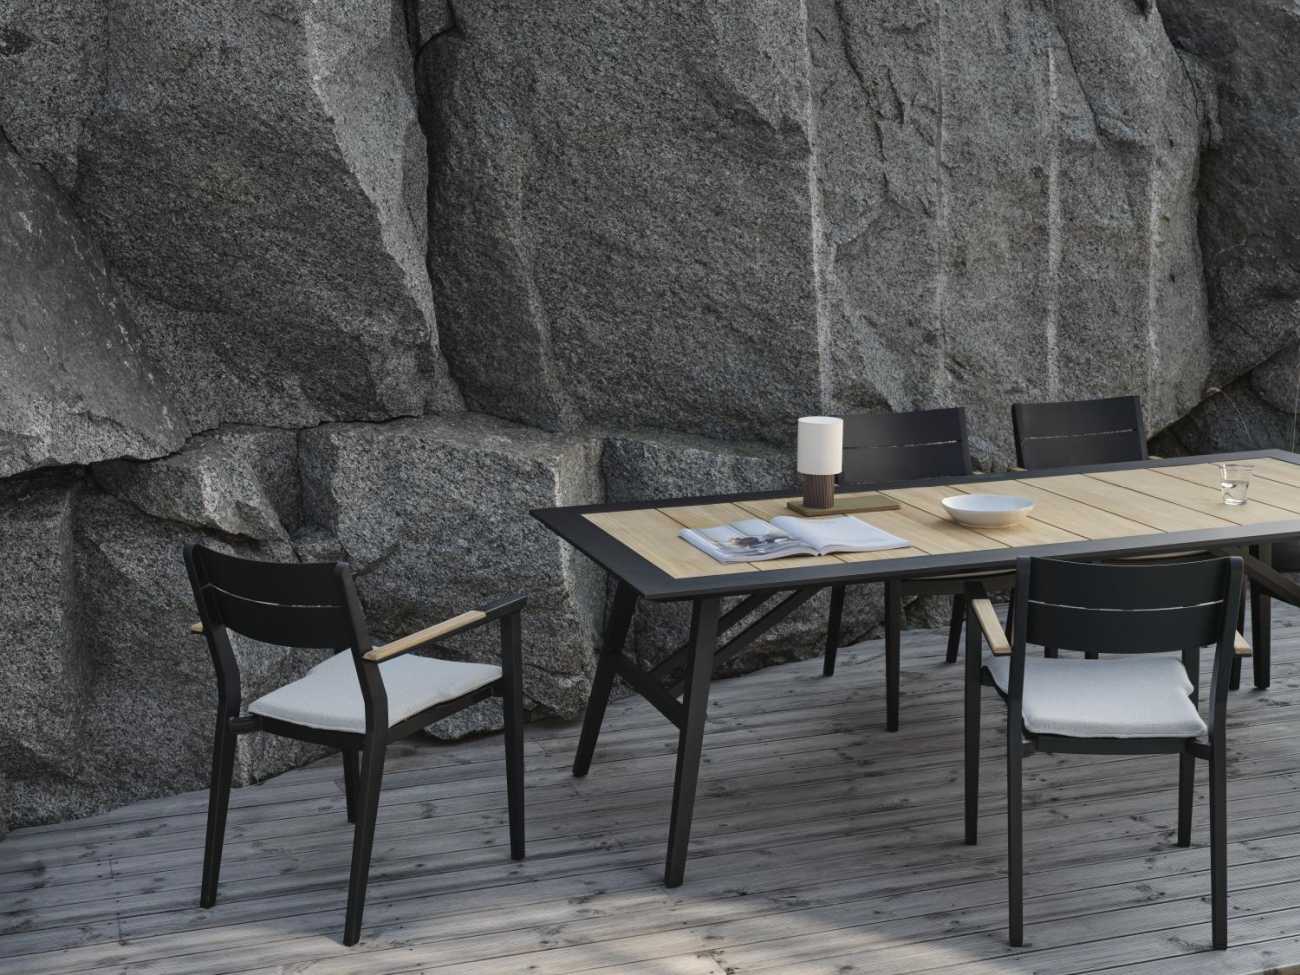 Der Gartenesstisch Chios überzeugt mit seinem modernen Design. Gefertigt wurde die Tischplatte aus Teakholz, welche einen natürlichen Farbton besitzt. Das Gestell ist aus Metall und hat eine Anthrazit Farbe. Der Tisch besitzt eine Länge von 175 cm.